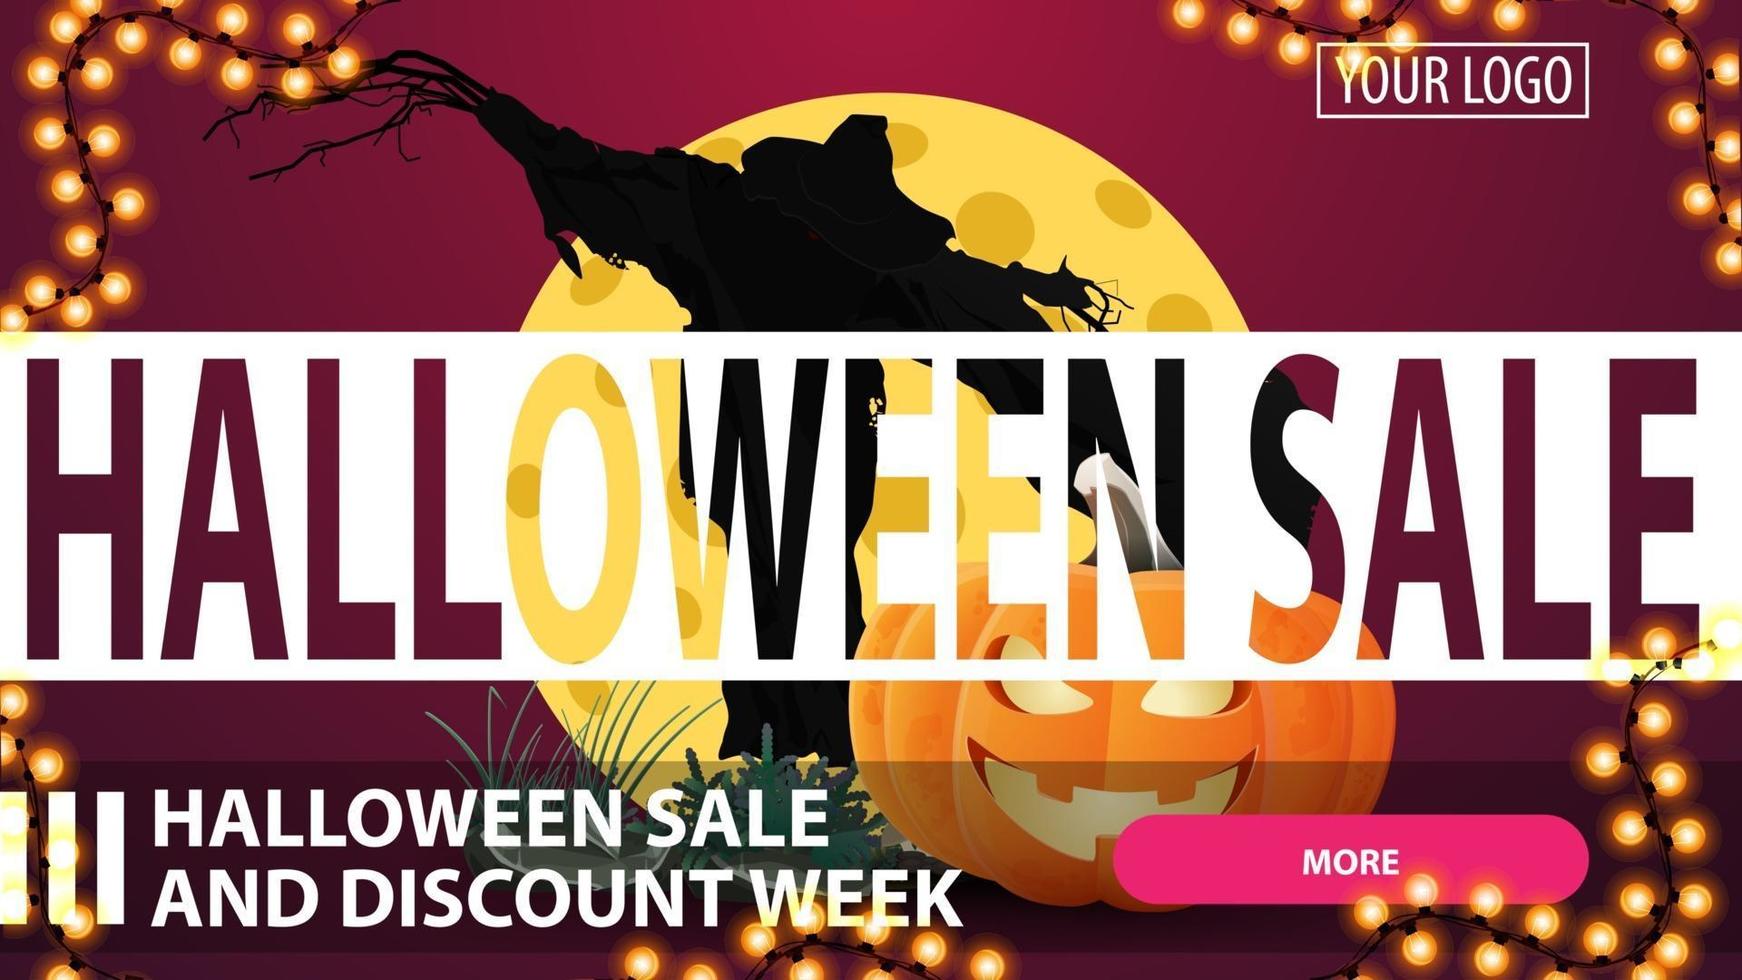 halloween försäljning och rabatt vecka, horisontell rosa kreativa rabatt banner med knapp, fågelskrämma och pumpa jack mot månen vektor